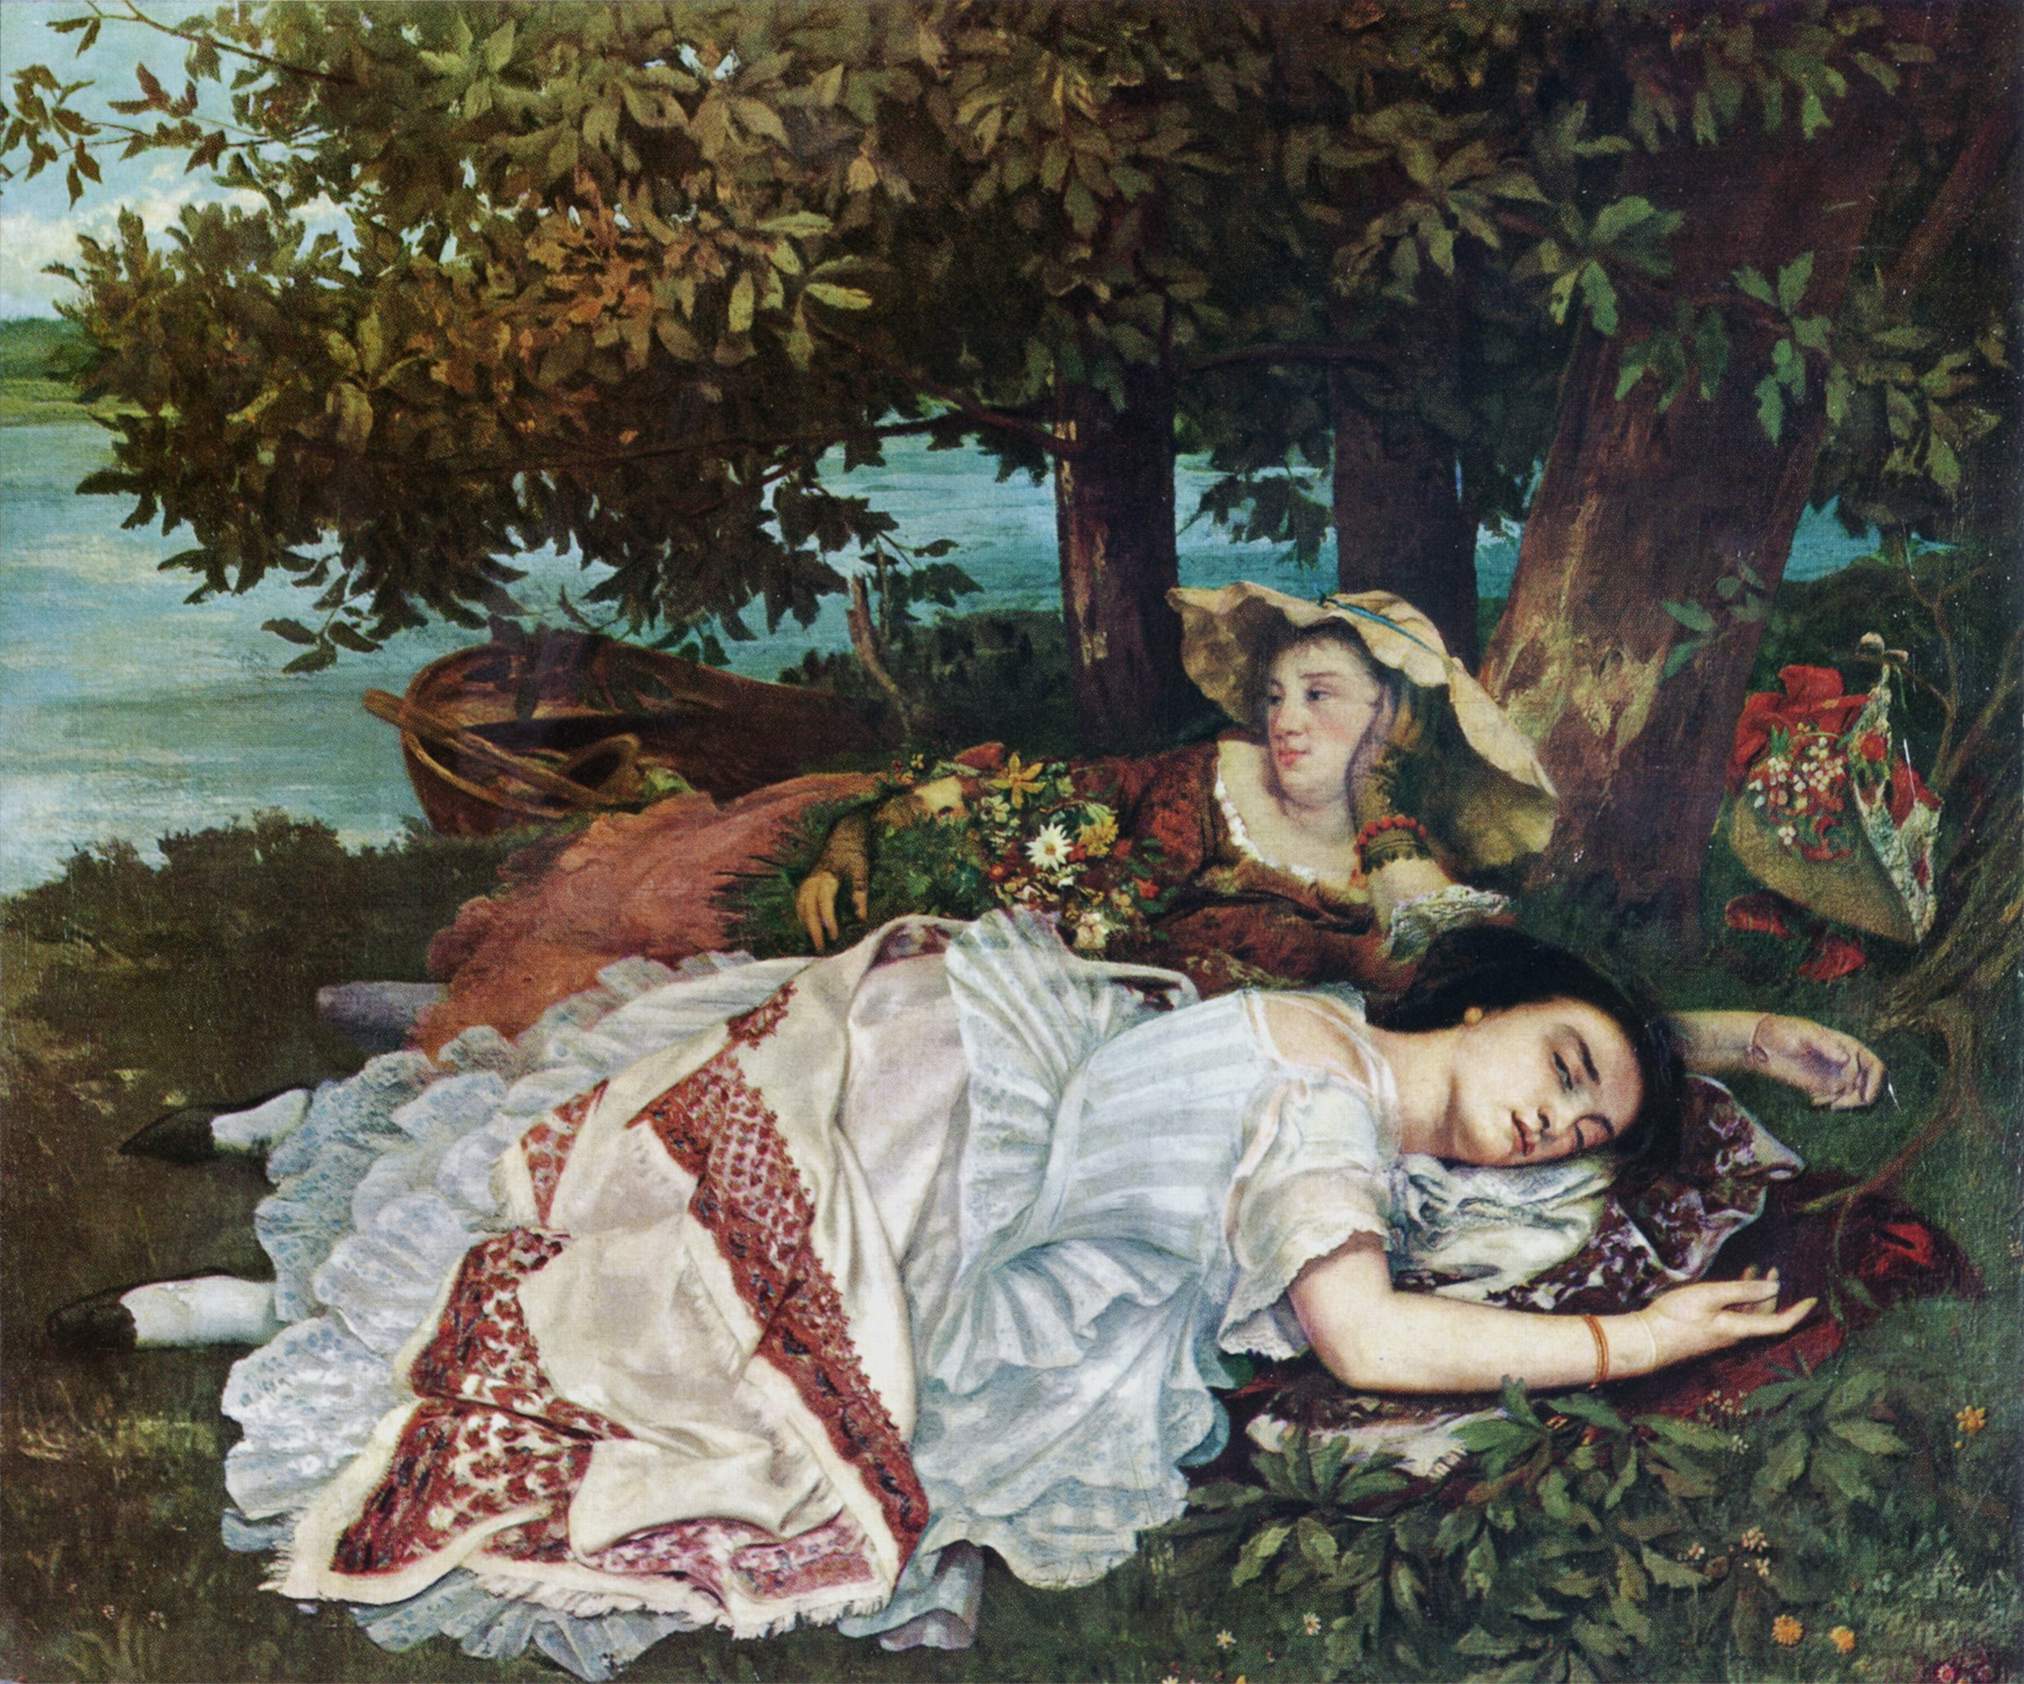 塞纳河畔的女郎 by 古斯塔夫 库尔贝 - 1857 - 174 x 206 cm 